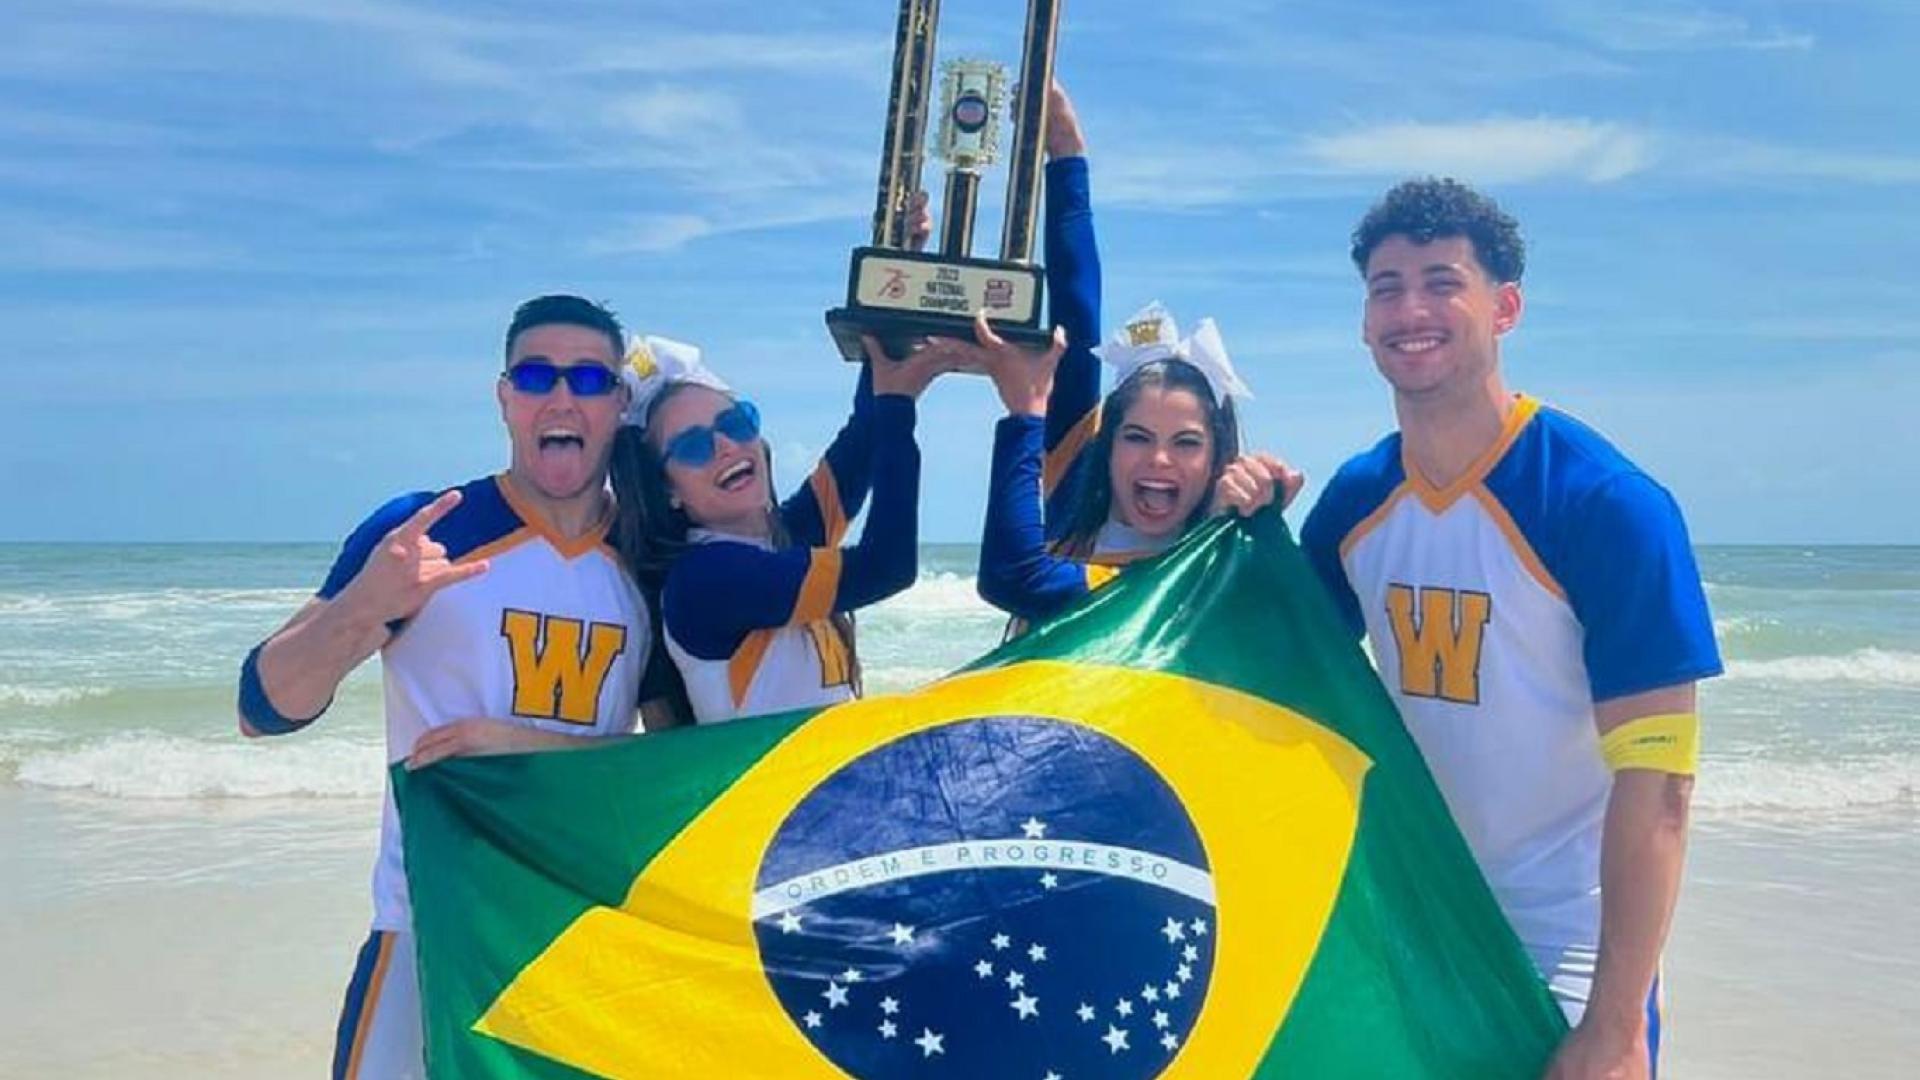 Dois homens e duas mulheres, atletas de cheers, segurando uma bandeira do Brasil e um troféu, na praia